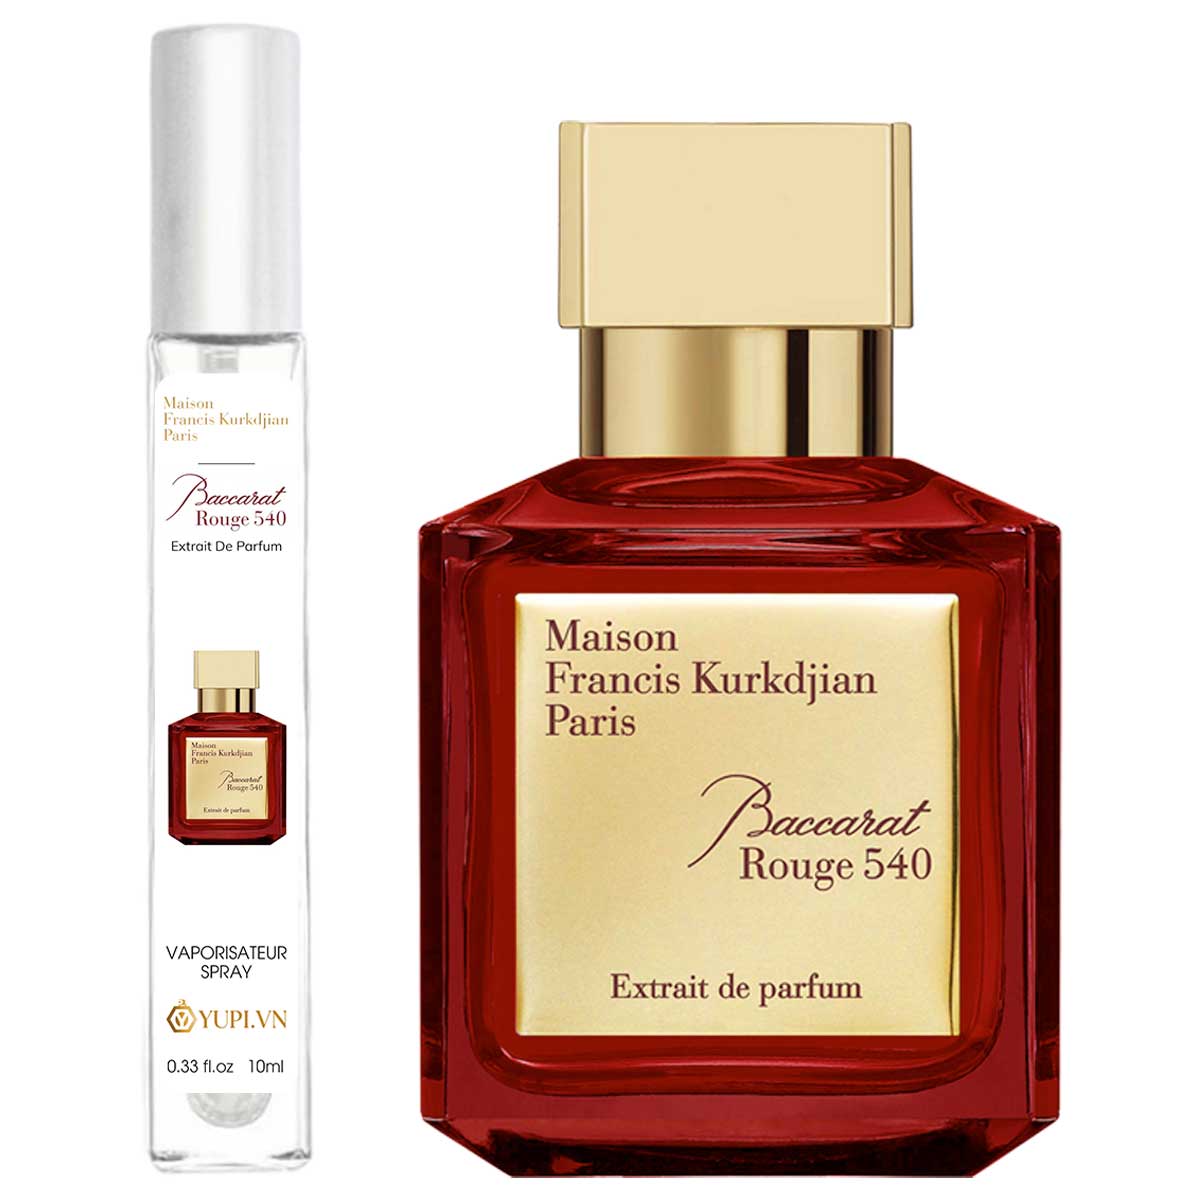 Maison Francis Kurkdjian Baccarat Rouge 540 Extrait de Parfum Chiết 10ml